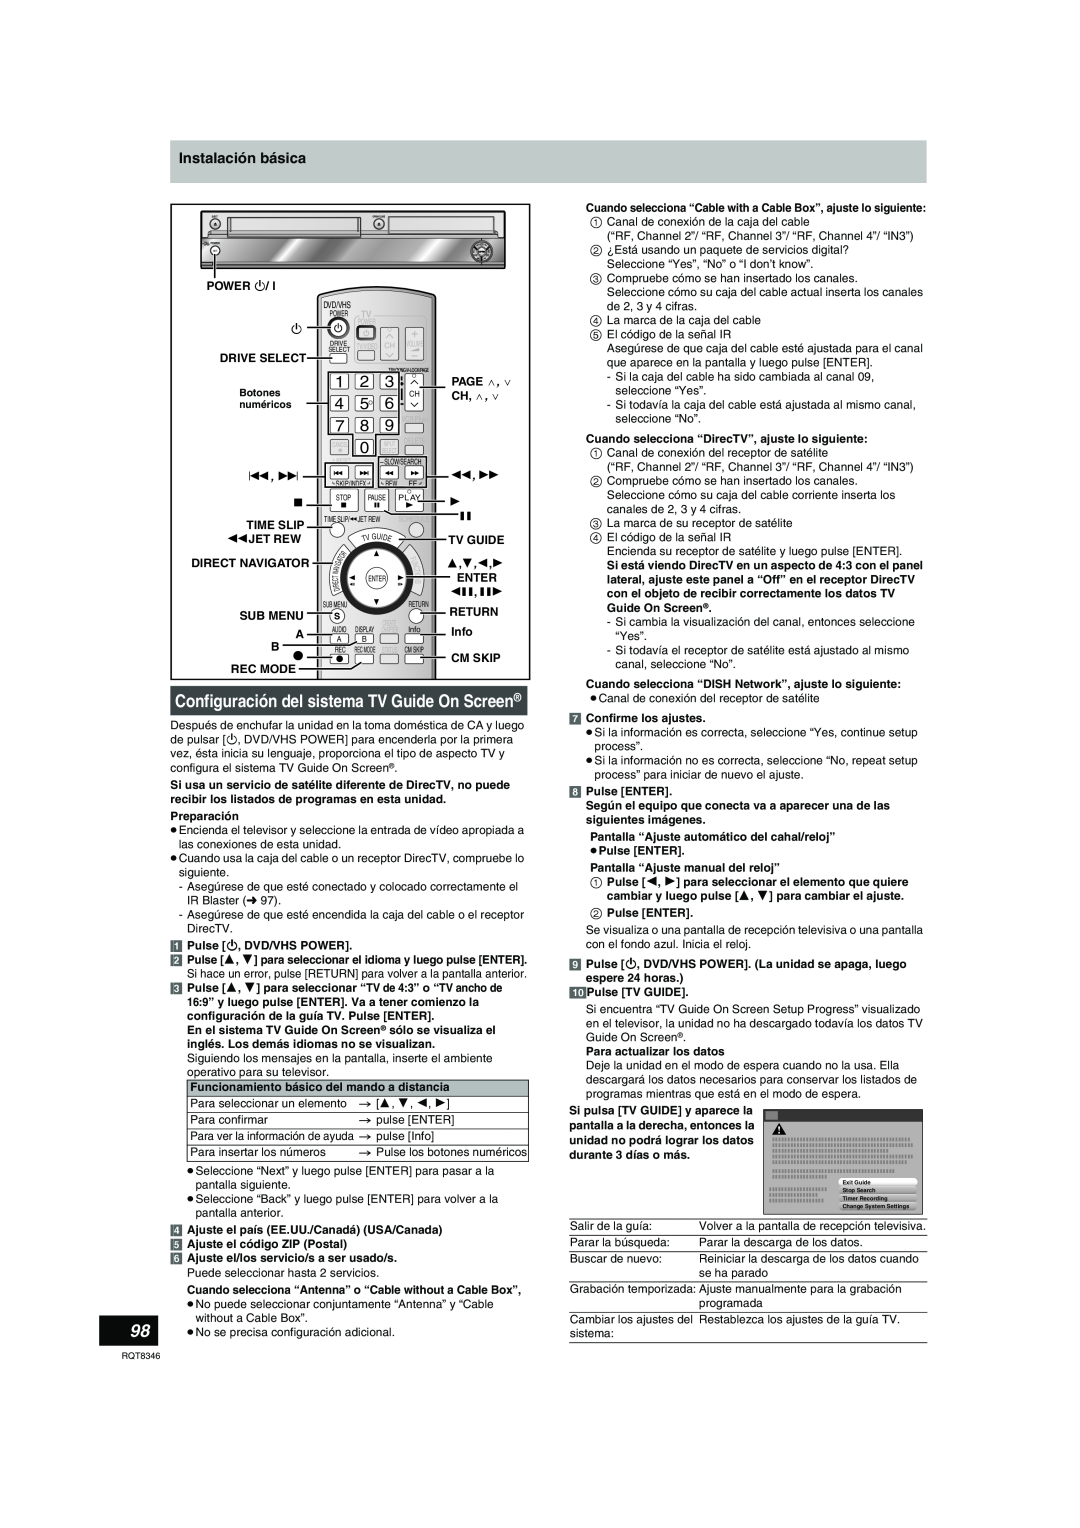 Panasonic DMR-EH75V Configuración del sistema TV Guide On Screen, Instalación básica, 3,4,2,1, durante 3 días o más 